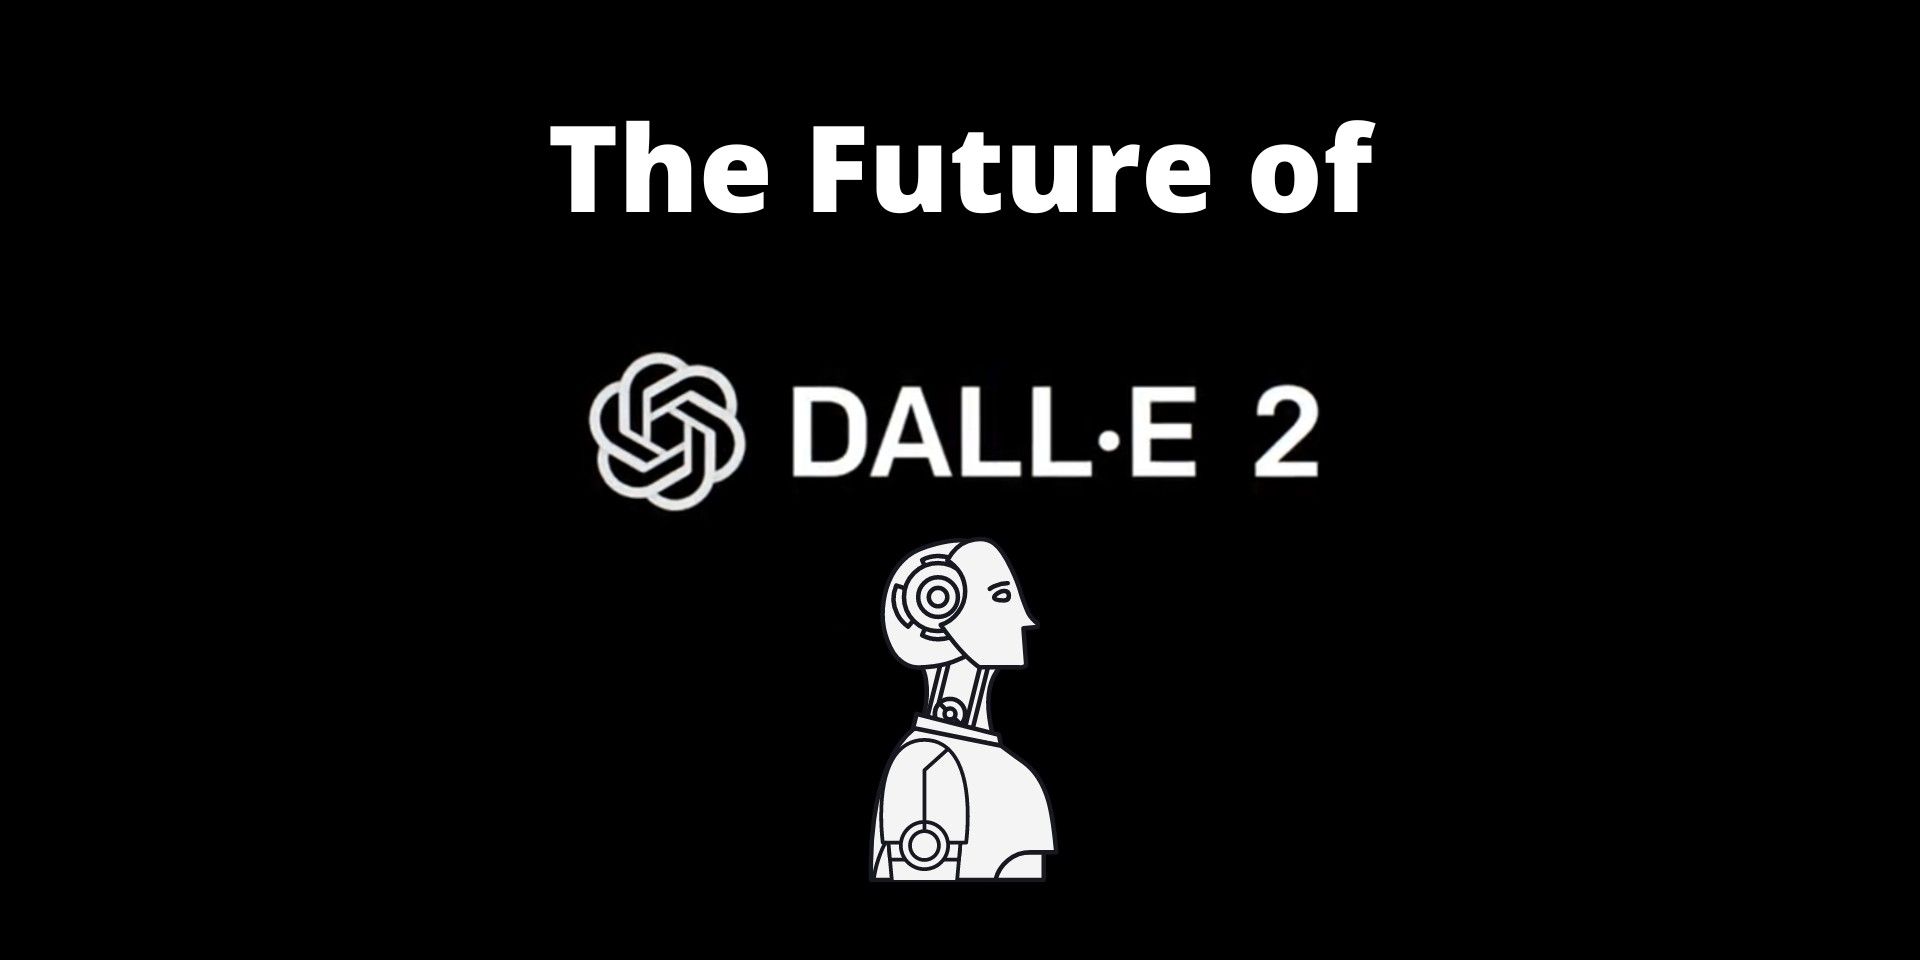 ¿Cuál es el futuro de la tecnología de IA de Dall-E?